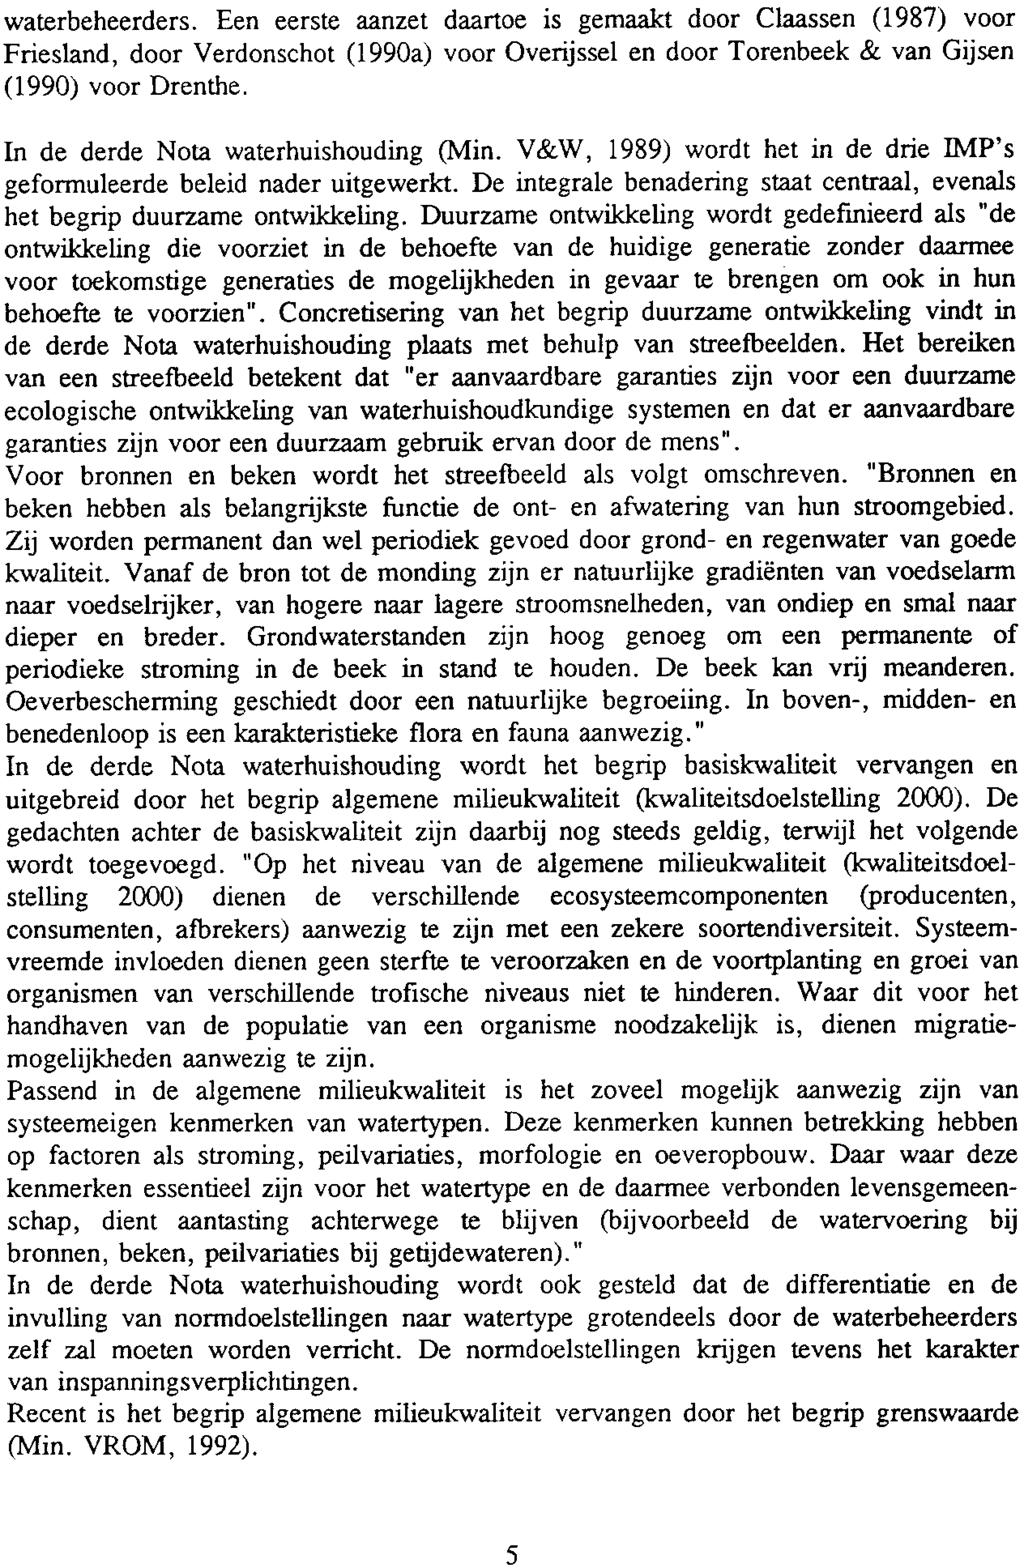 waterbeheerders. Een eerste aanzet daartoe is gemaakt door Claassen (1987) voor Friesland, door Verdonschot (1990a) voor Overijssel en door Torenbeek & van Gijsen (1990) voor Drenthe.